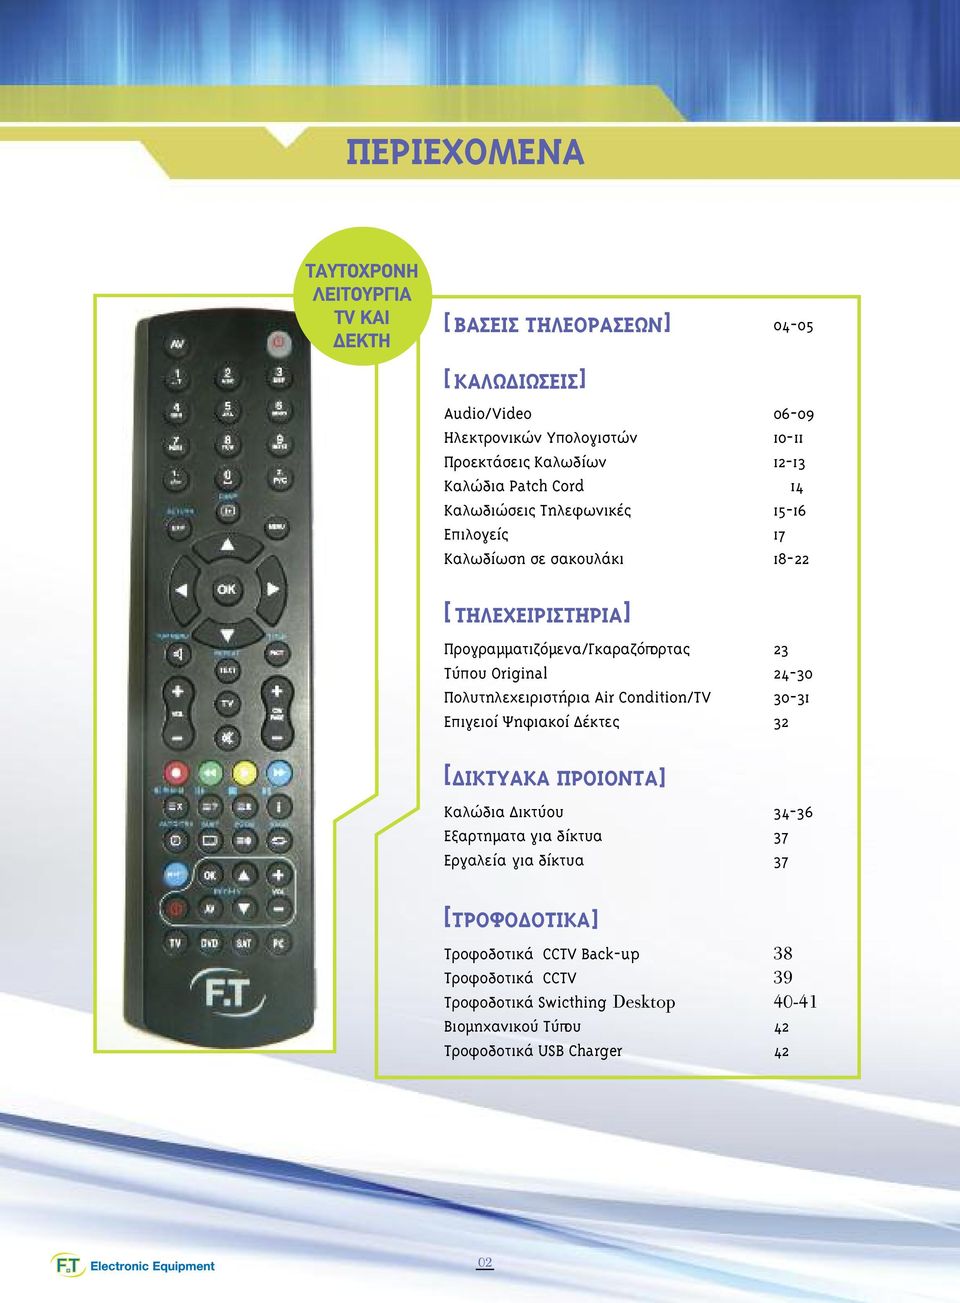 Οriginal 24-30 Πολυτηλεχειριστήρια Air Condition/TV 30-31 Επιγειοί Ψηφιακοί έκτες 32 [ ΙΚΤΥΑΚΑ ΠΡΟΙΟΝΤΑ] Καλώδια ικτύου 34-36 Εξαρτηµατα για δίκτυα 37 Εργαλεία